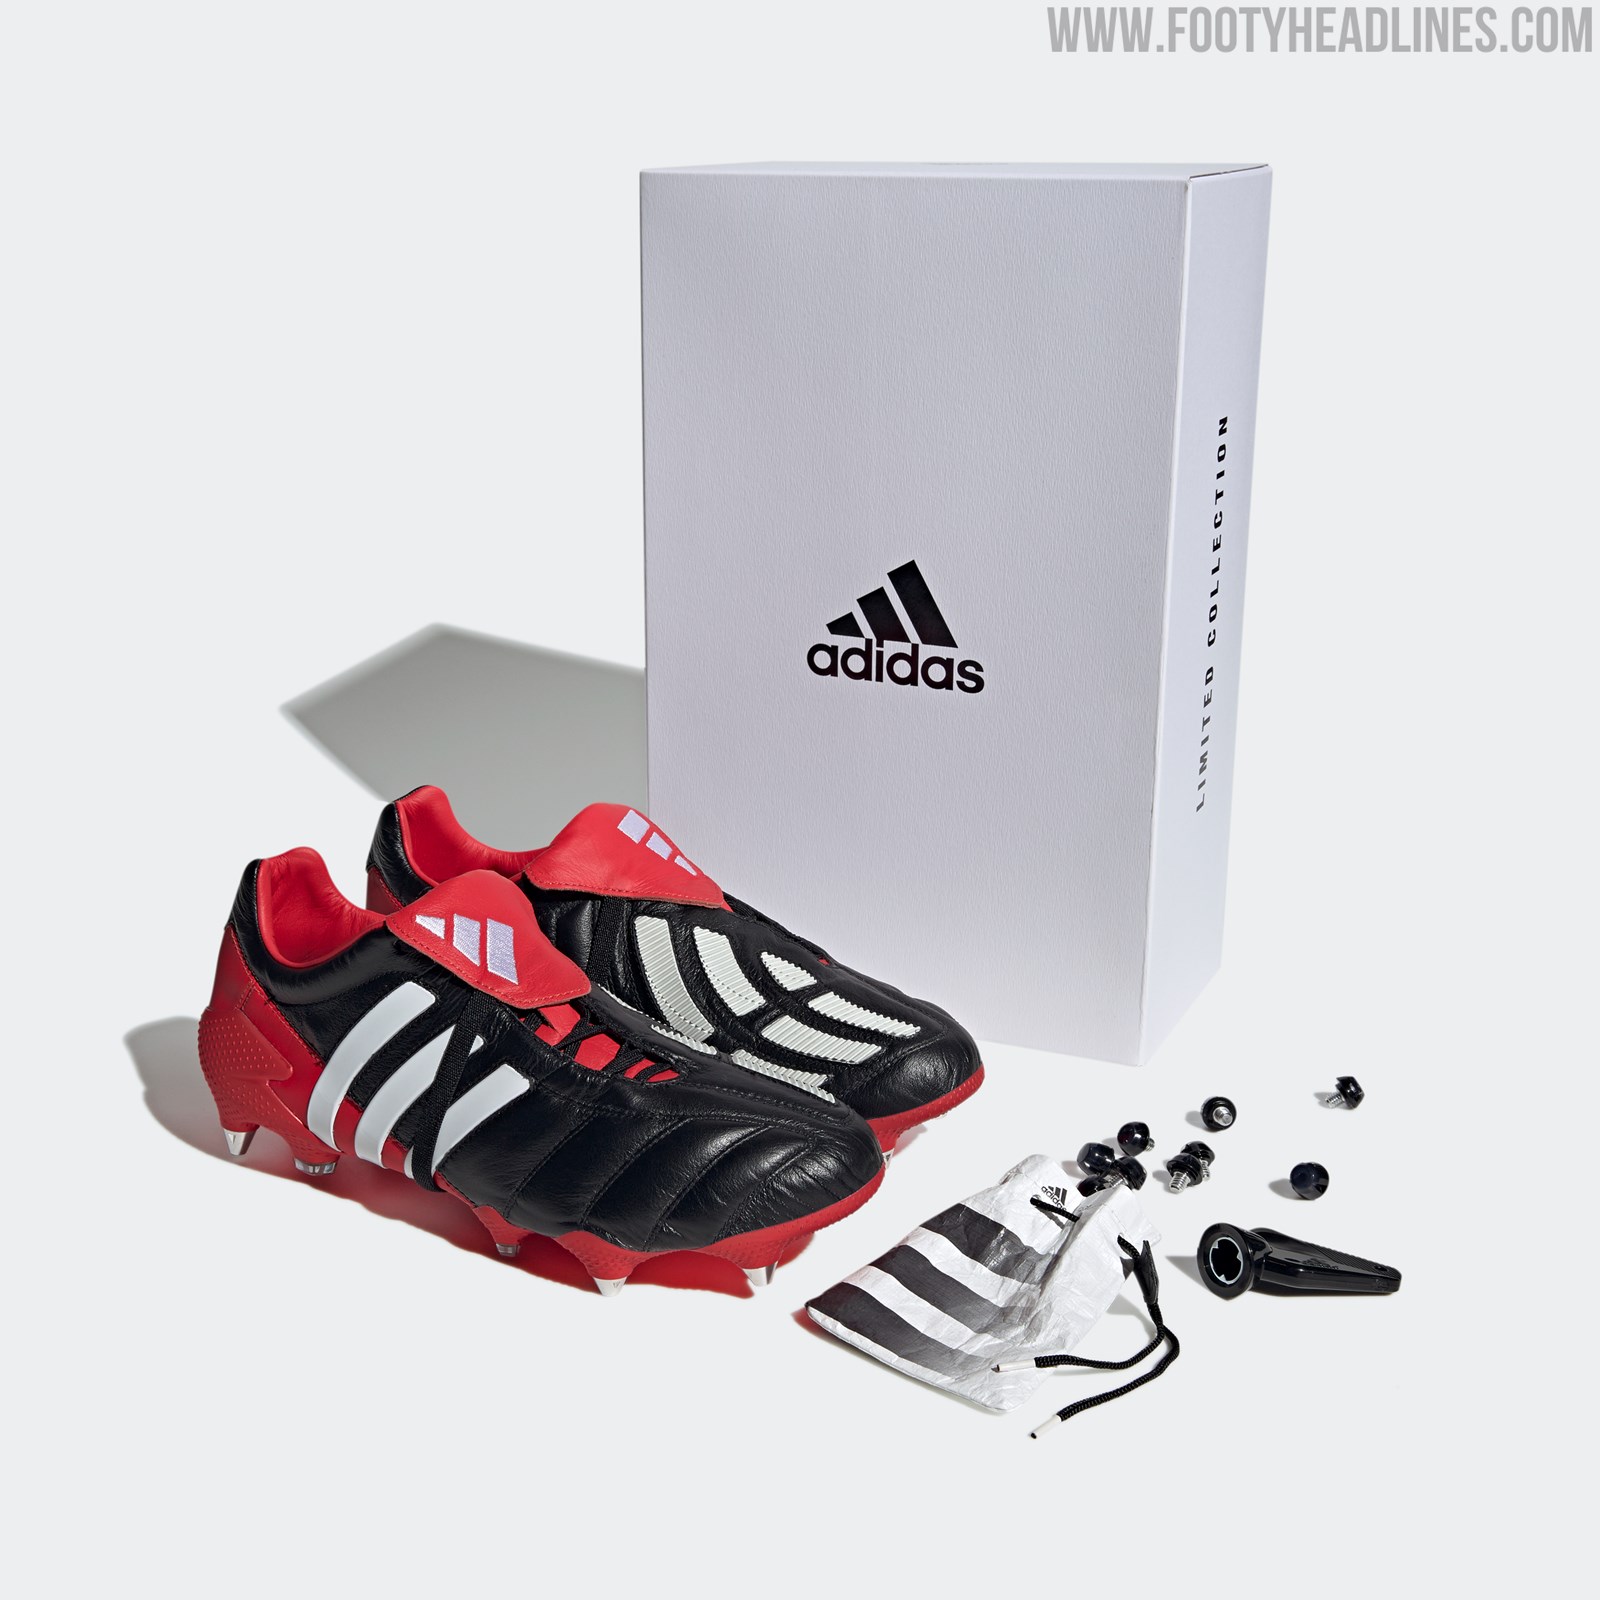 en frente de seguridad grano Adidas Predator Mania SG Remake Boots Released - Just 2,002 Pairs Available  - Footy Headlines